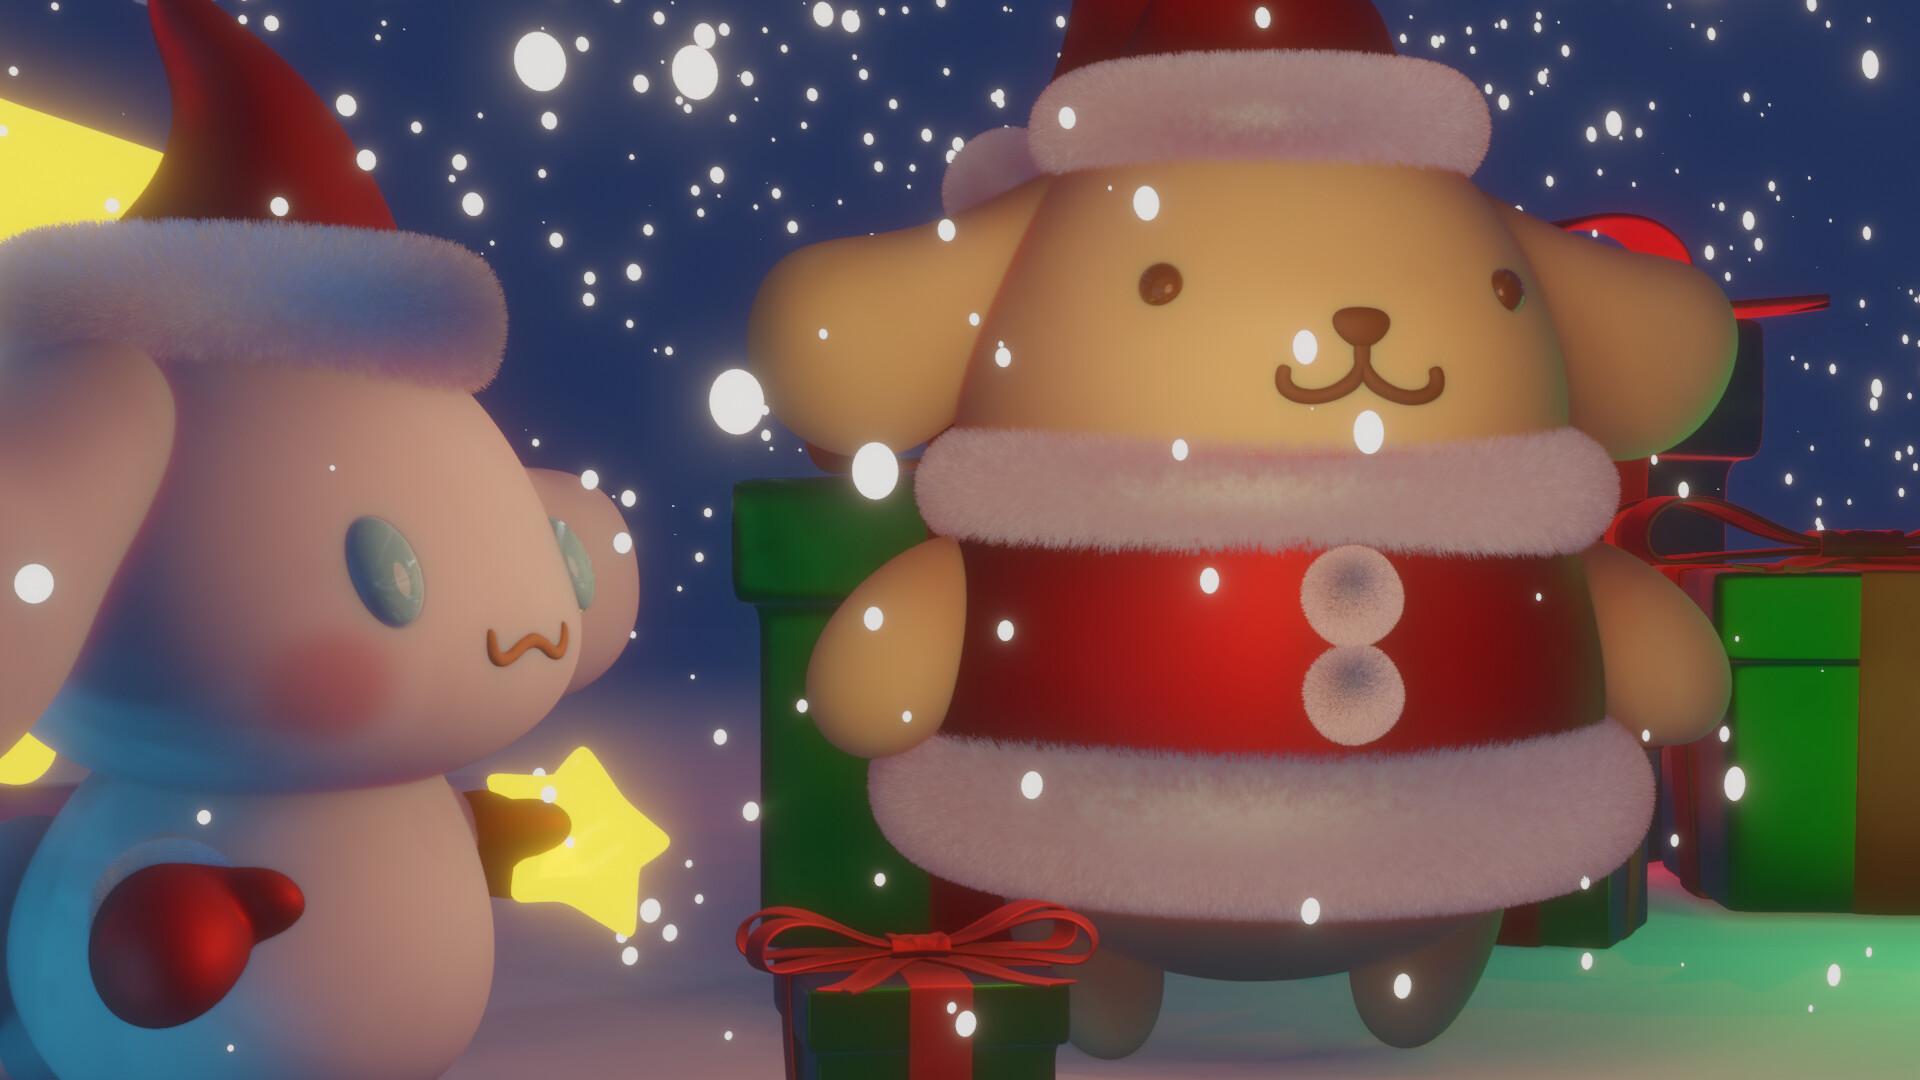 Sanrio Christmas Wallpapers - Top Free Sanrio Christmas Backgrounds ...